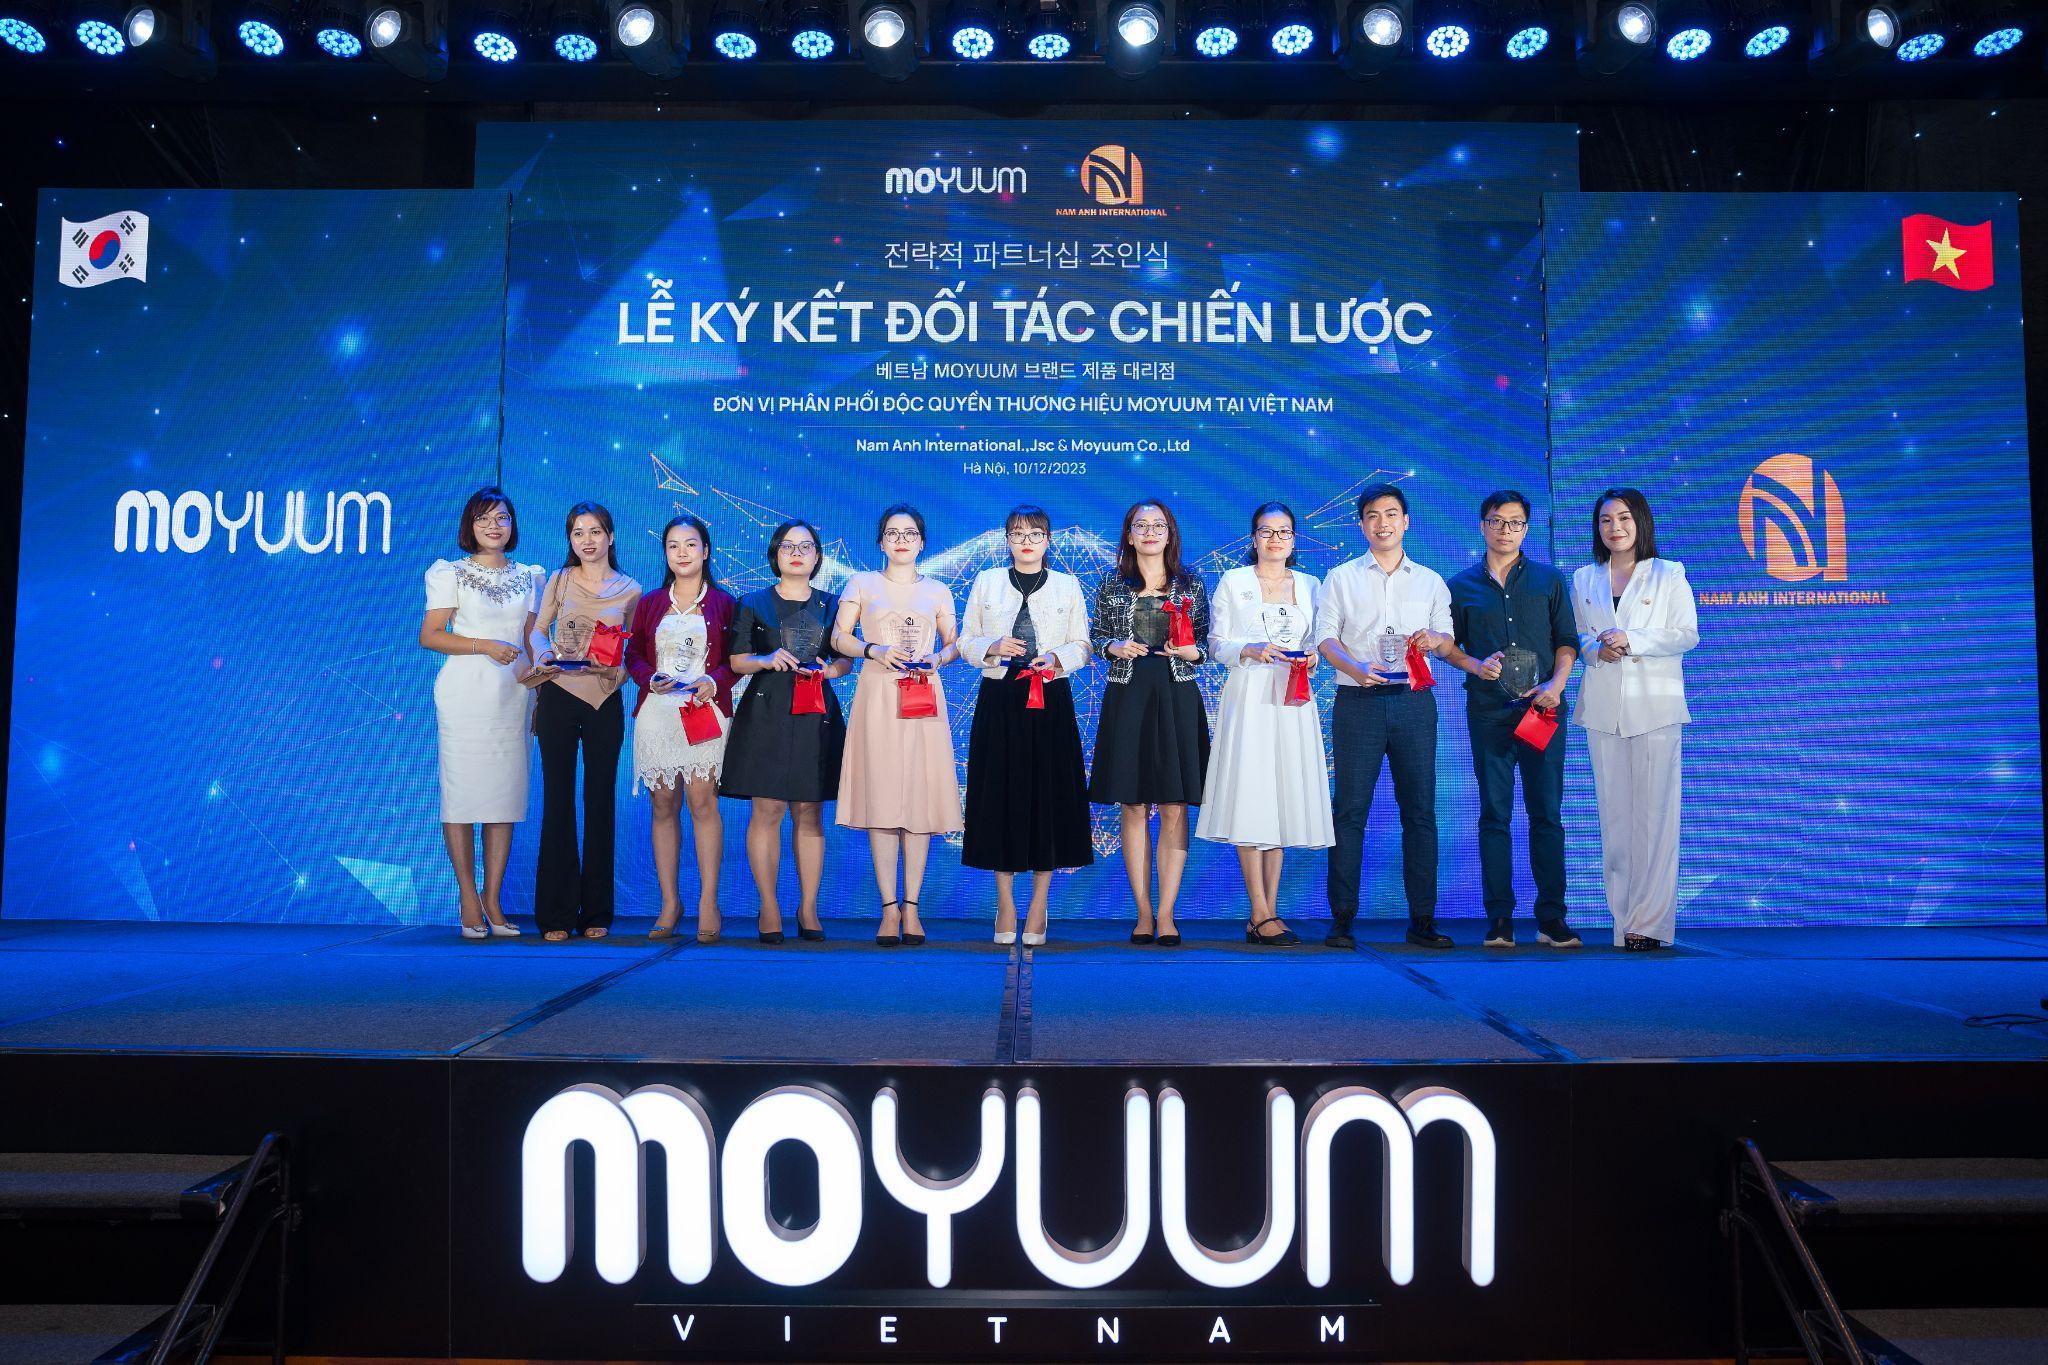 Thương hiệu Moyuum Hàn Quốc tham vọng chiếm lĩnh thị trường mẹ và bé Việt Nam - 3